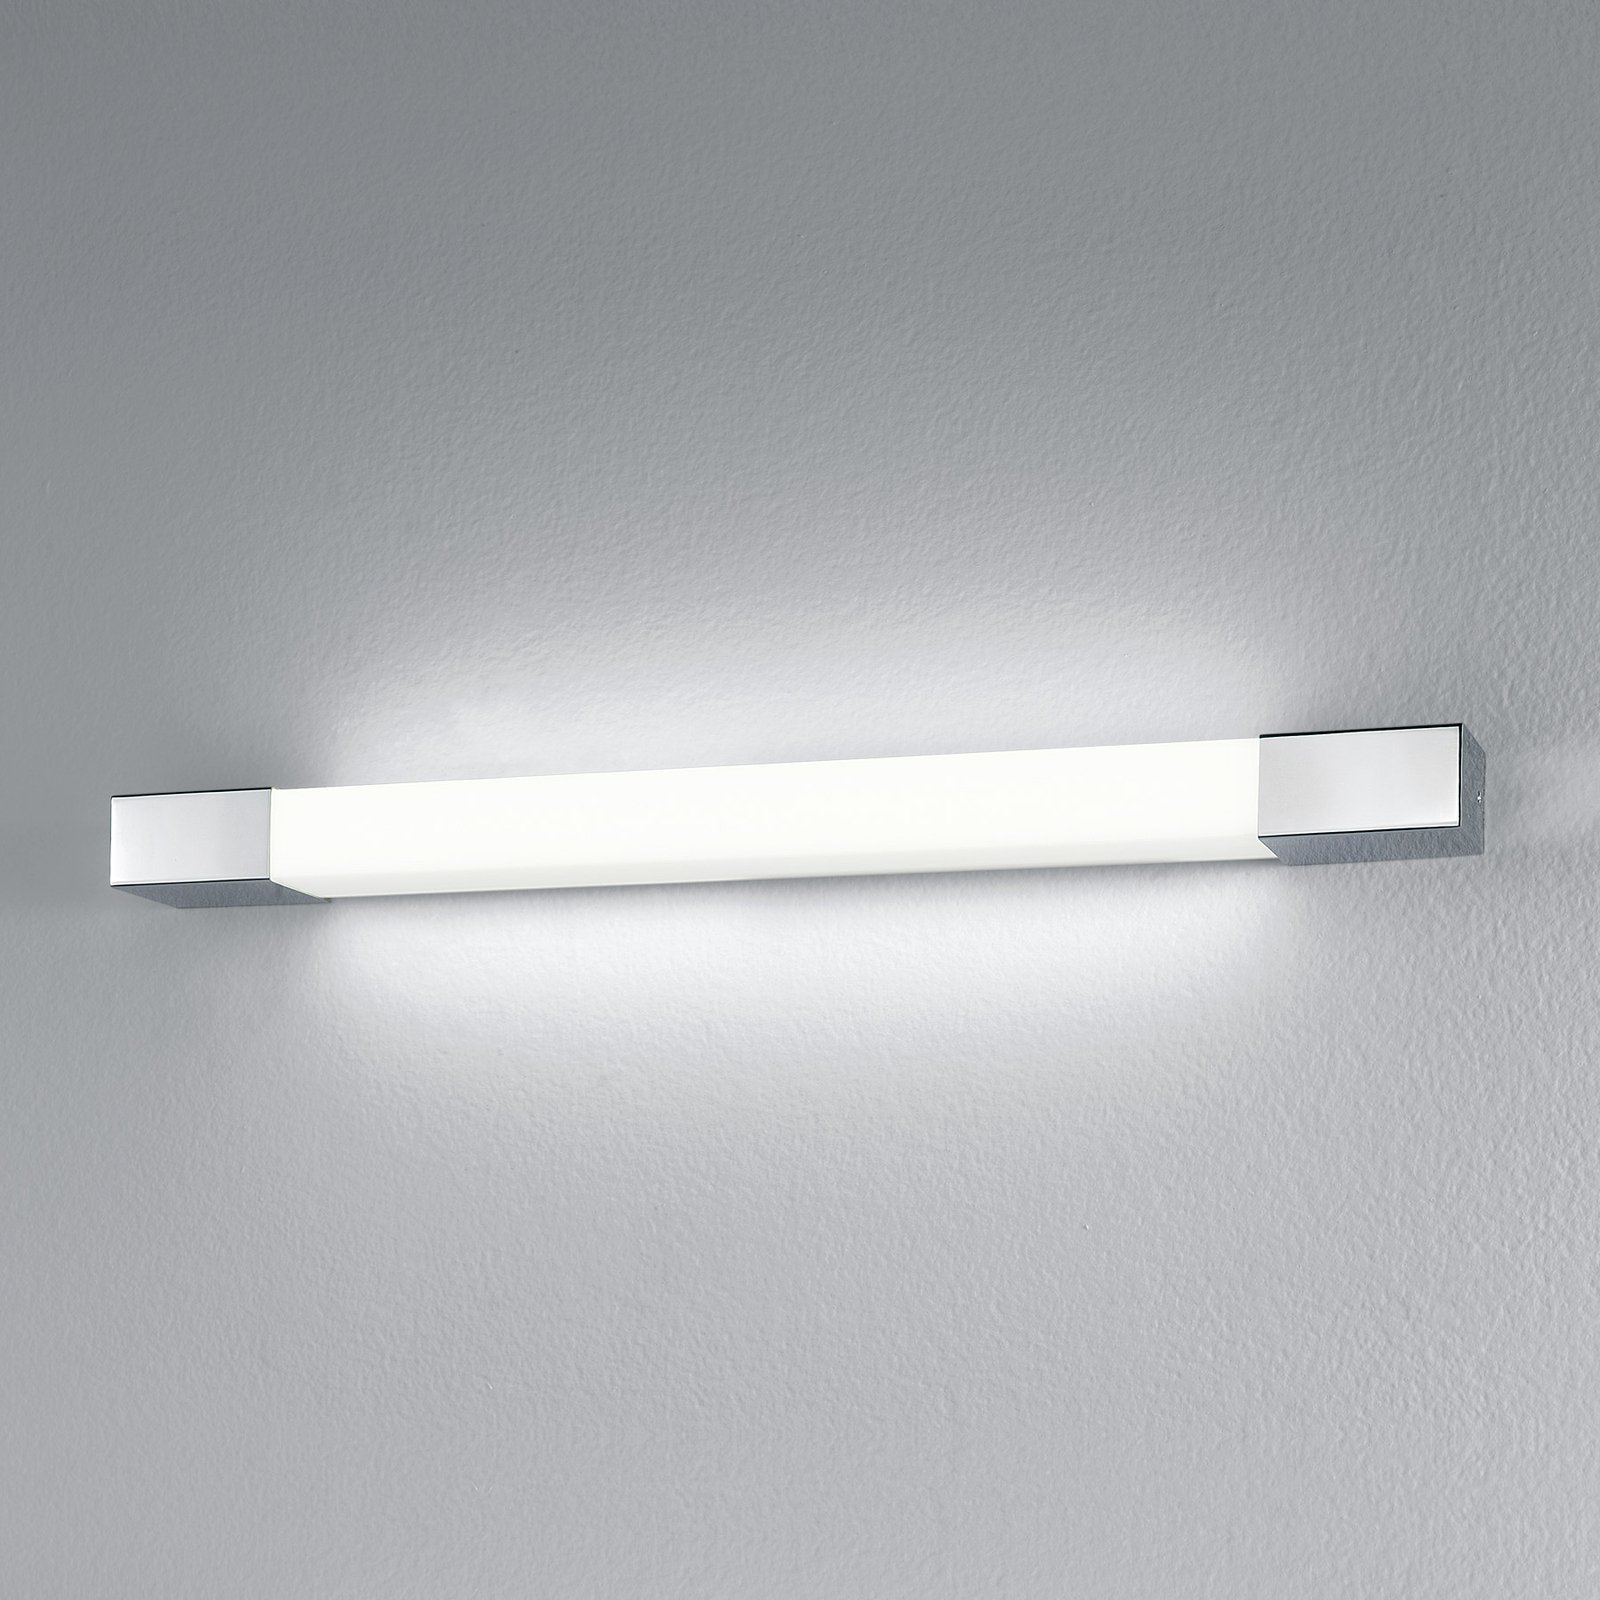 Nástěnné svítidlo Egger Supreme LED, nerezová ocel, 130 cm